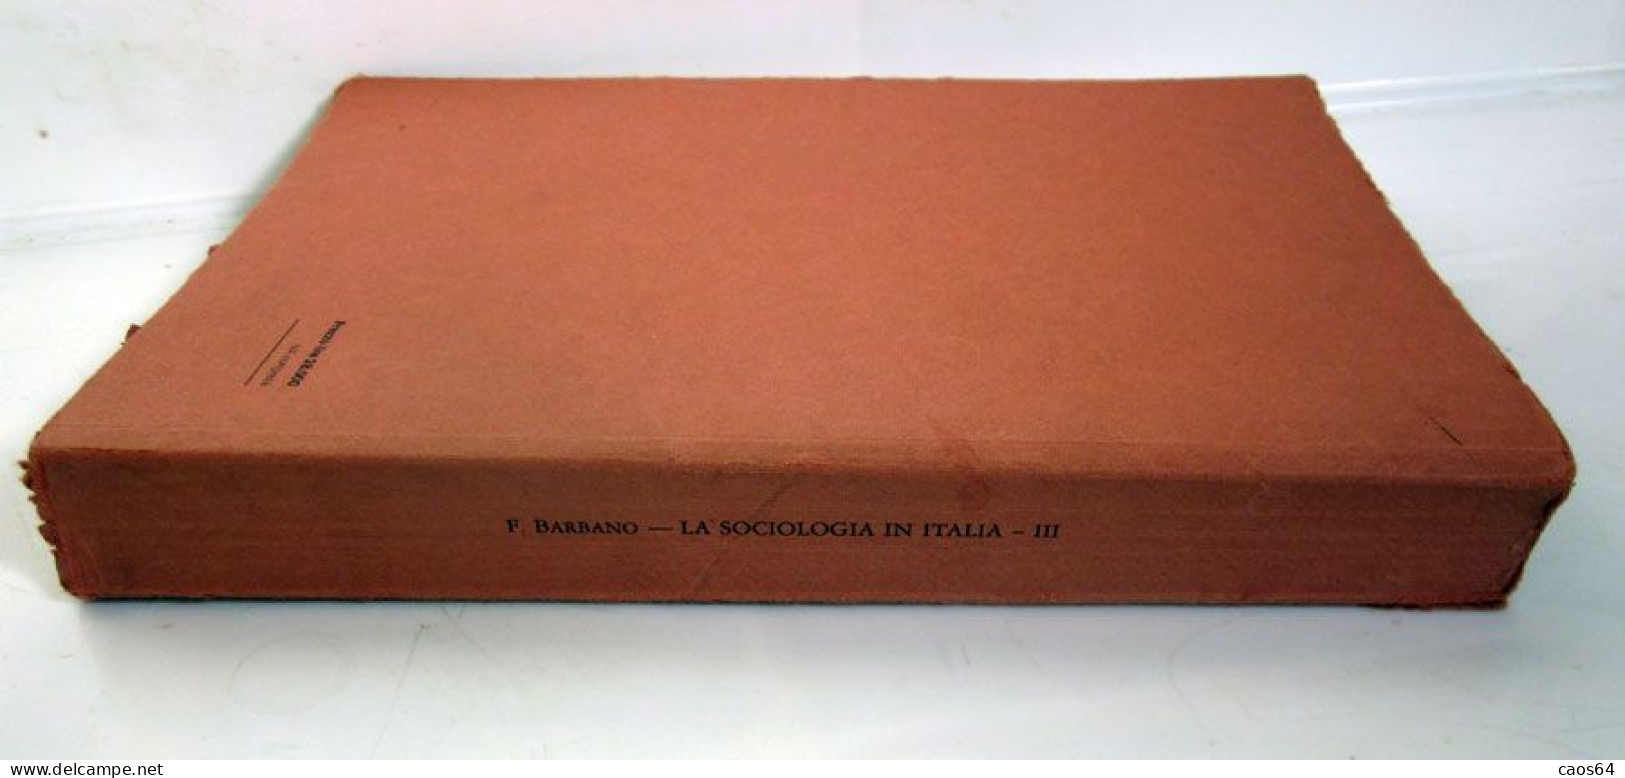 La Sociologia In Italia III Filippo Barbano Giappichelli 1987 - Recht Und Wirtschaft